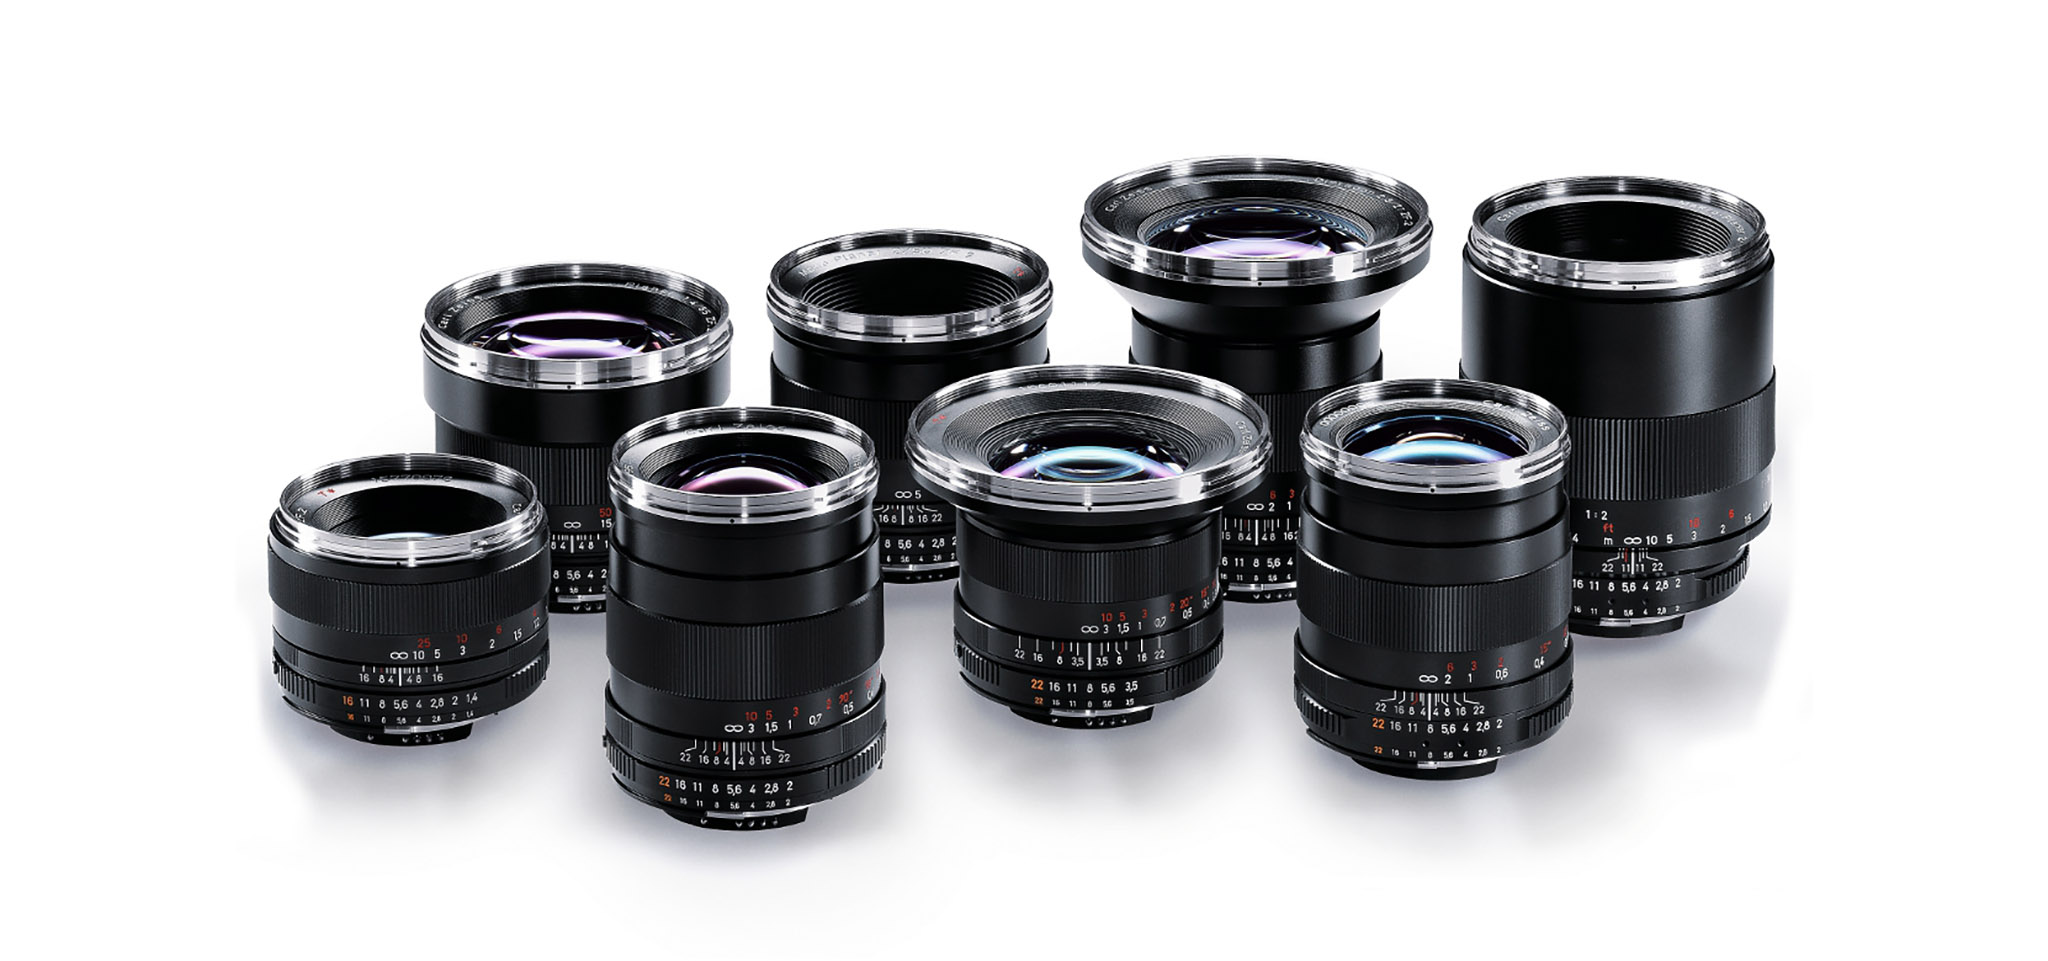 Cosina  ngừng sản xuất ống kính Zeiss SLR dòng Classic, xả hàng tồn kho với giá rất rẻ